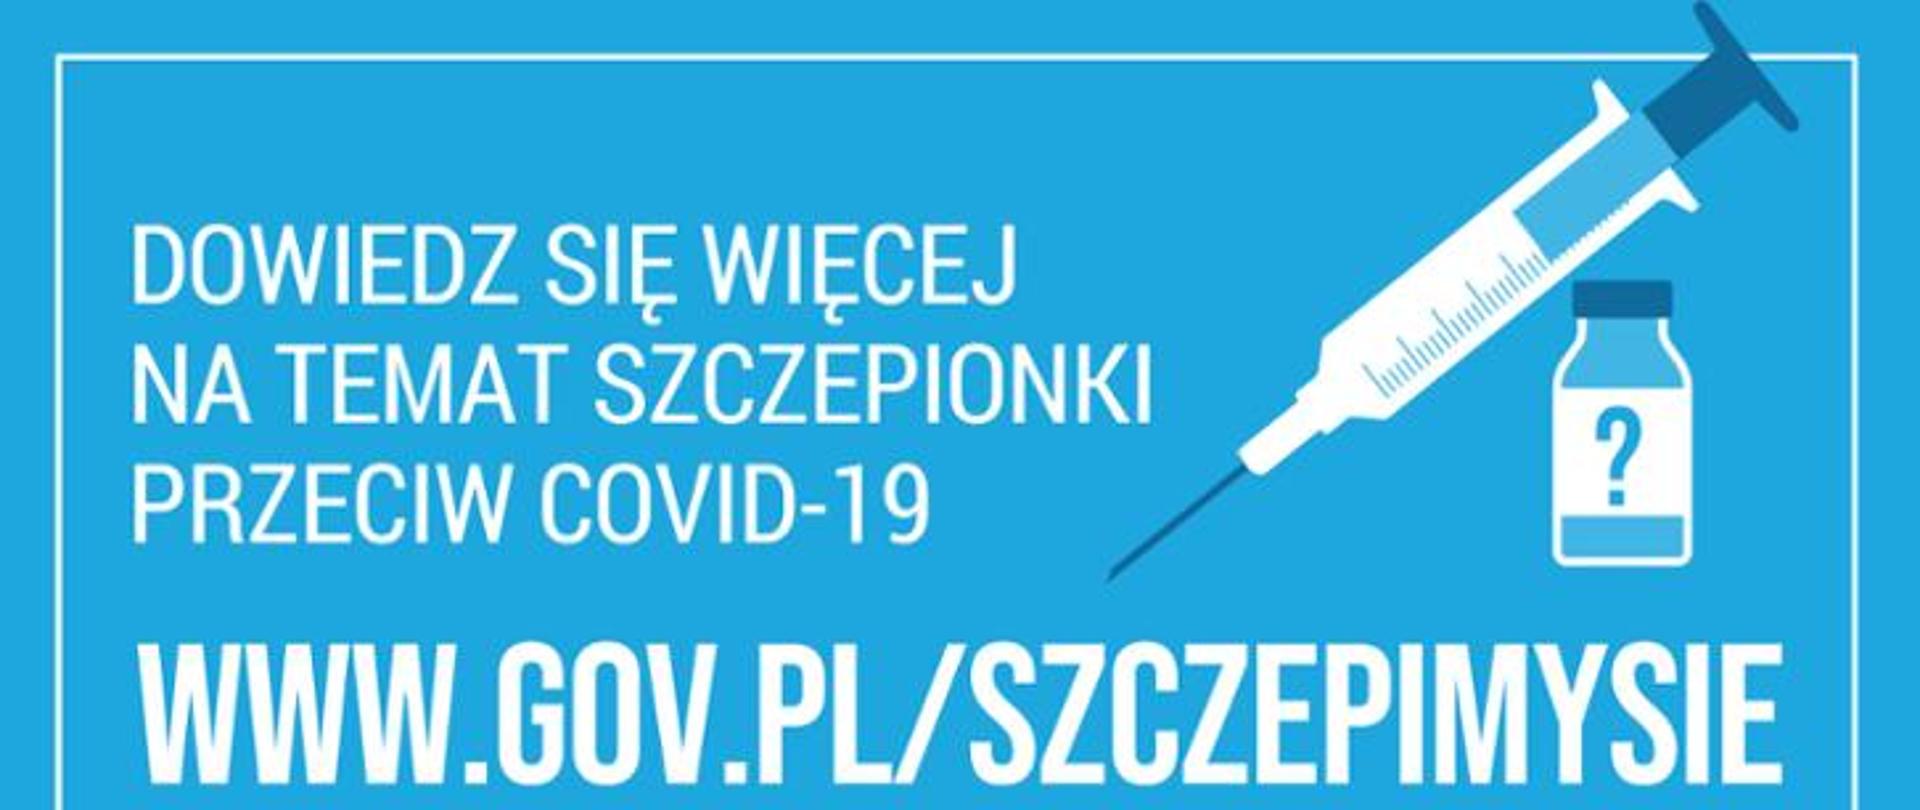 Logo Narodowego programu szczepień na COVID 19 na zdjęciu adres strony www.gov.pl/szczepimysie oraz szczepionka